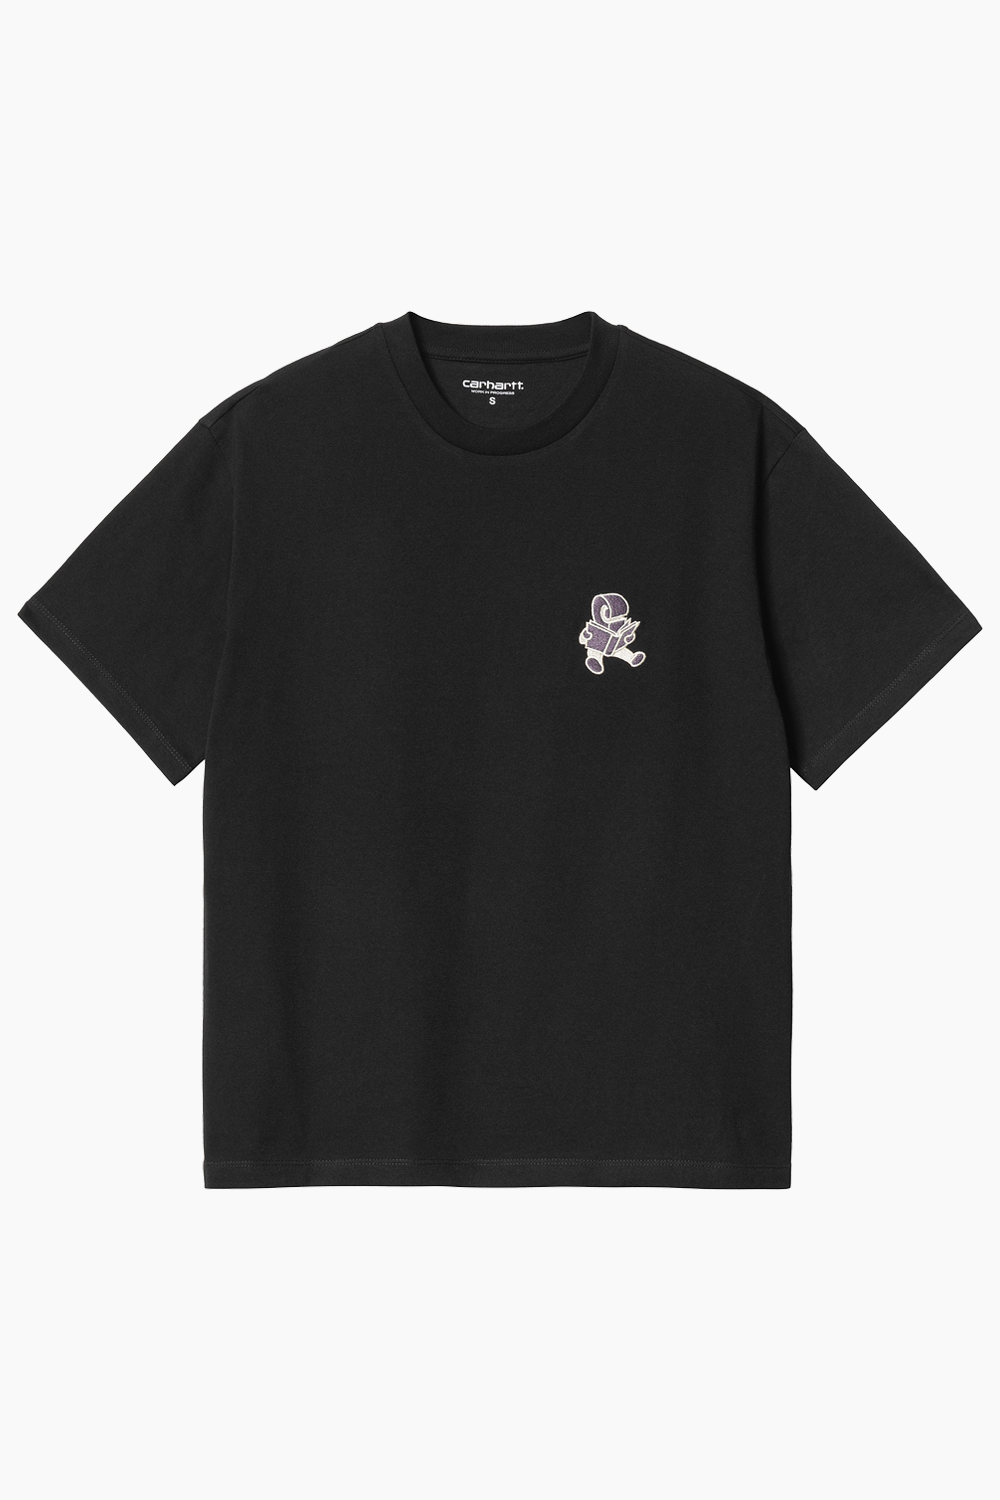 W' S/S Reading Club T-shirt - Black - Carhartt WIP